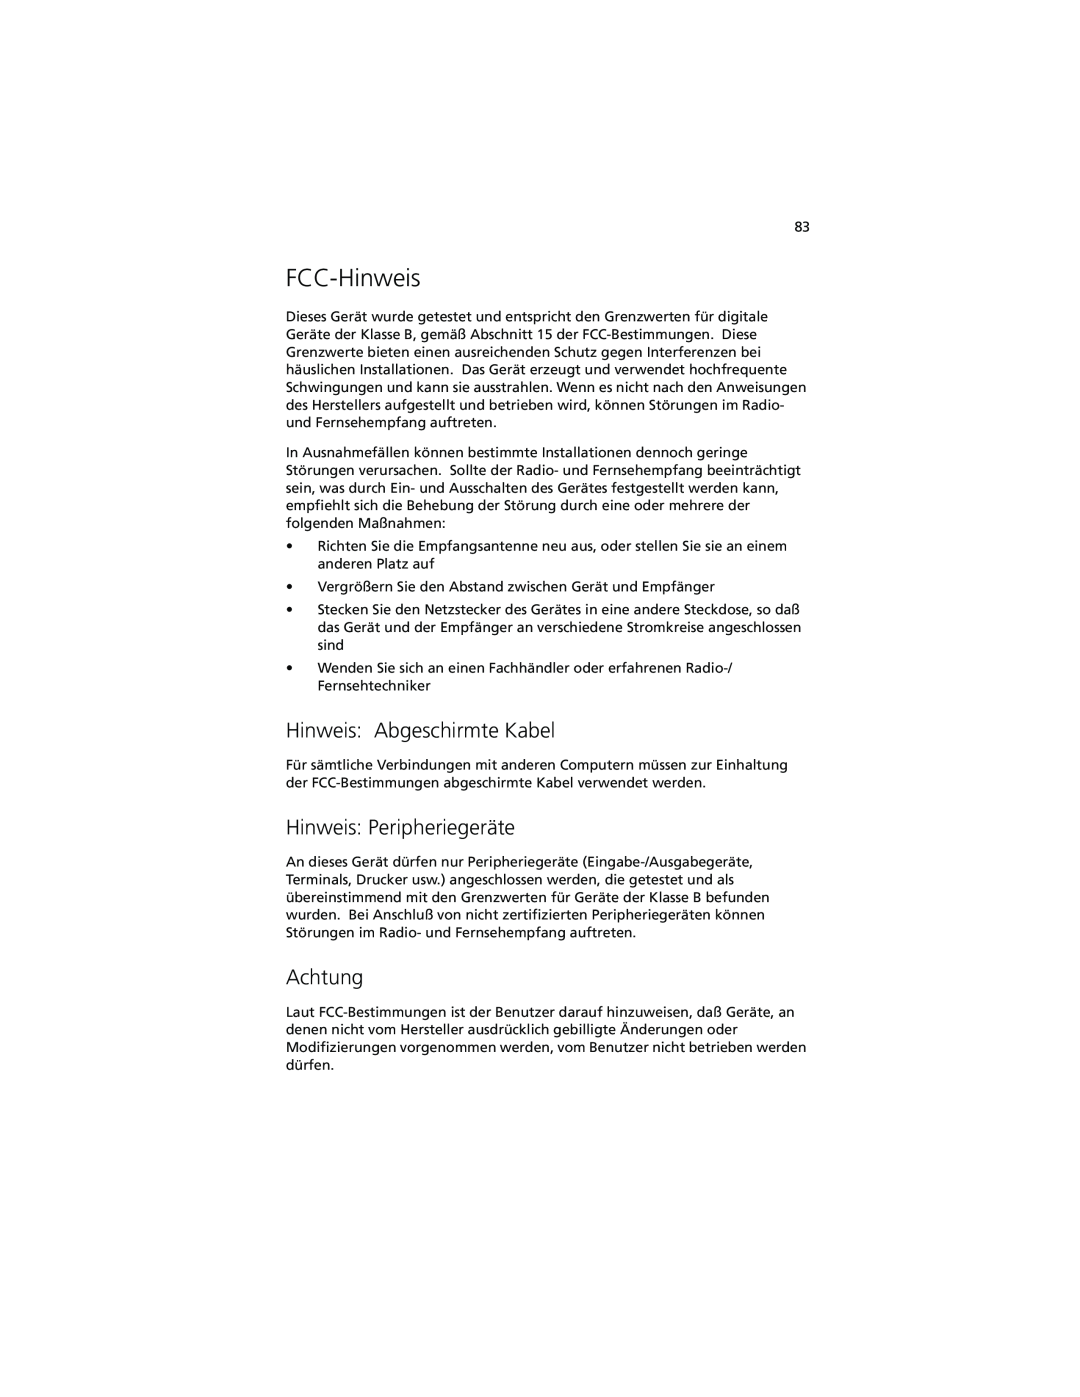 Acer C100-Series manual FCC-Hinweis, Hinweis Abgeschirmte Kabel, Hinweis Peripheriegeräte, Achtung 